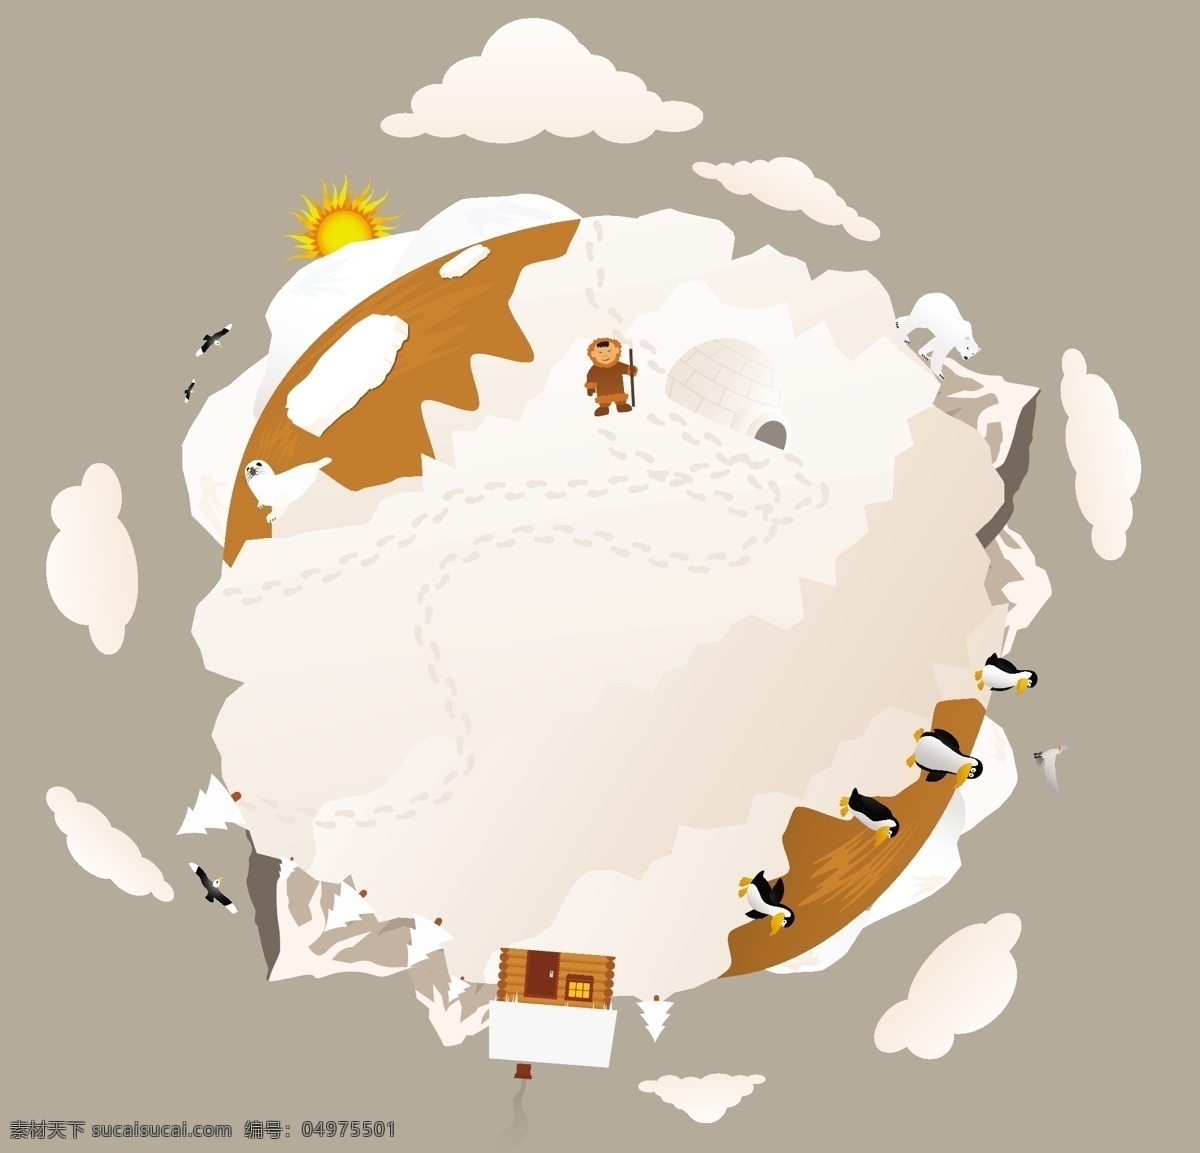 地球上的南极 南极 企鹅 矢量地球 卡通地球 地球插图 创意地球 生活百科 矢量素材 白色